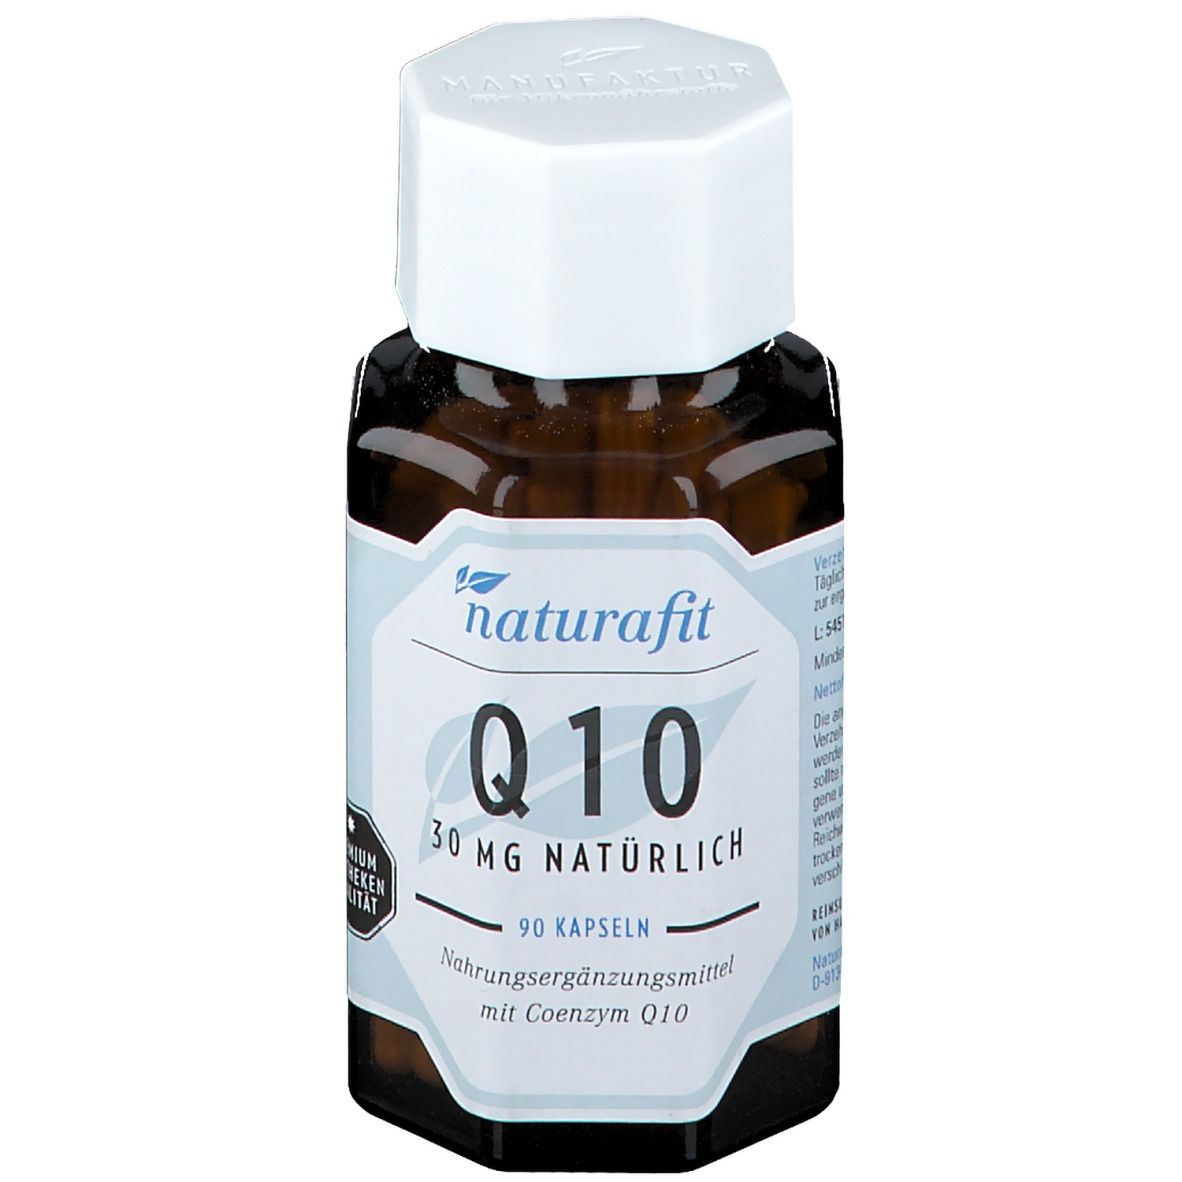 naturafit® Q10 30 mg natürlich